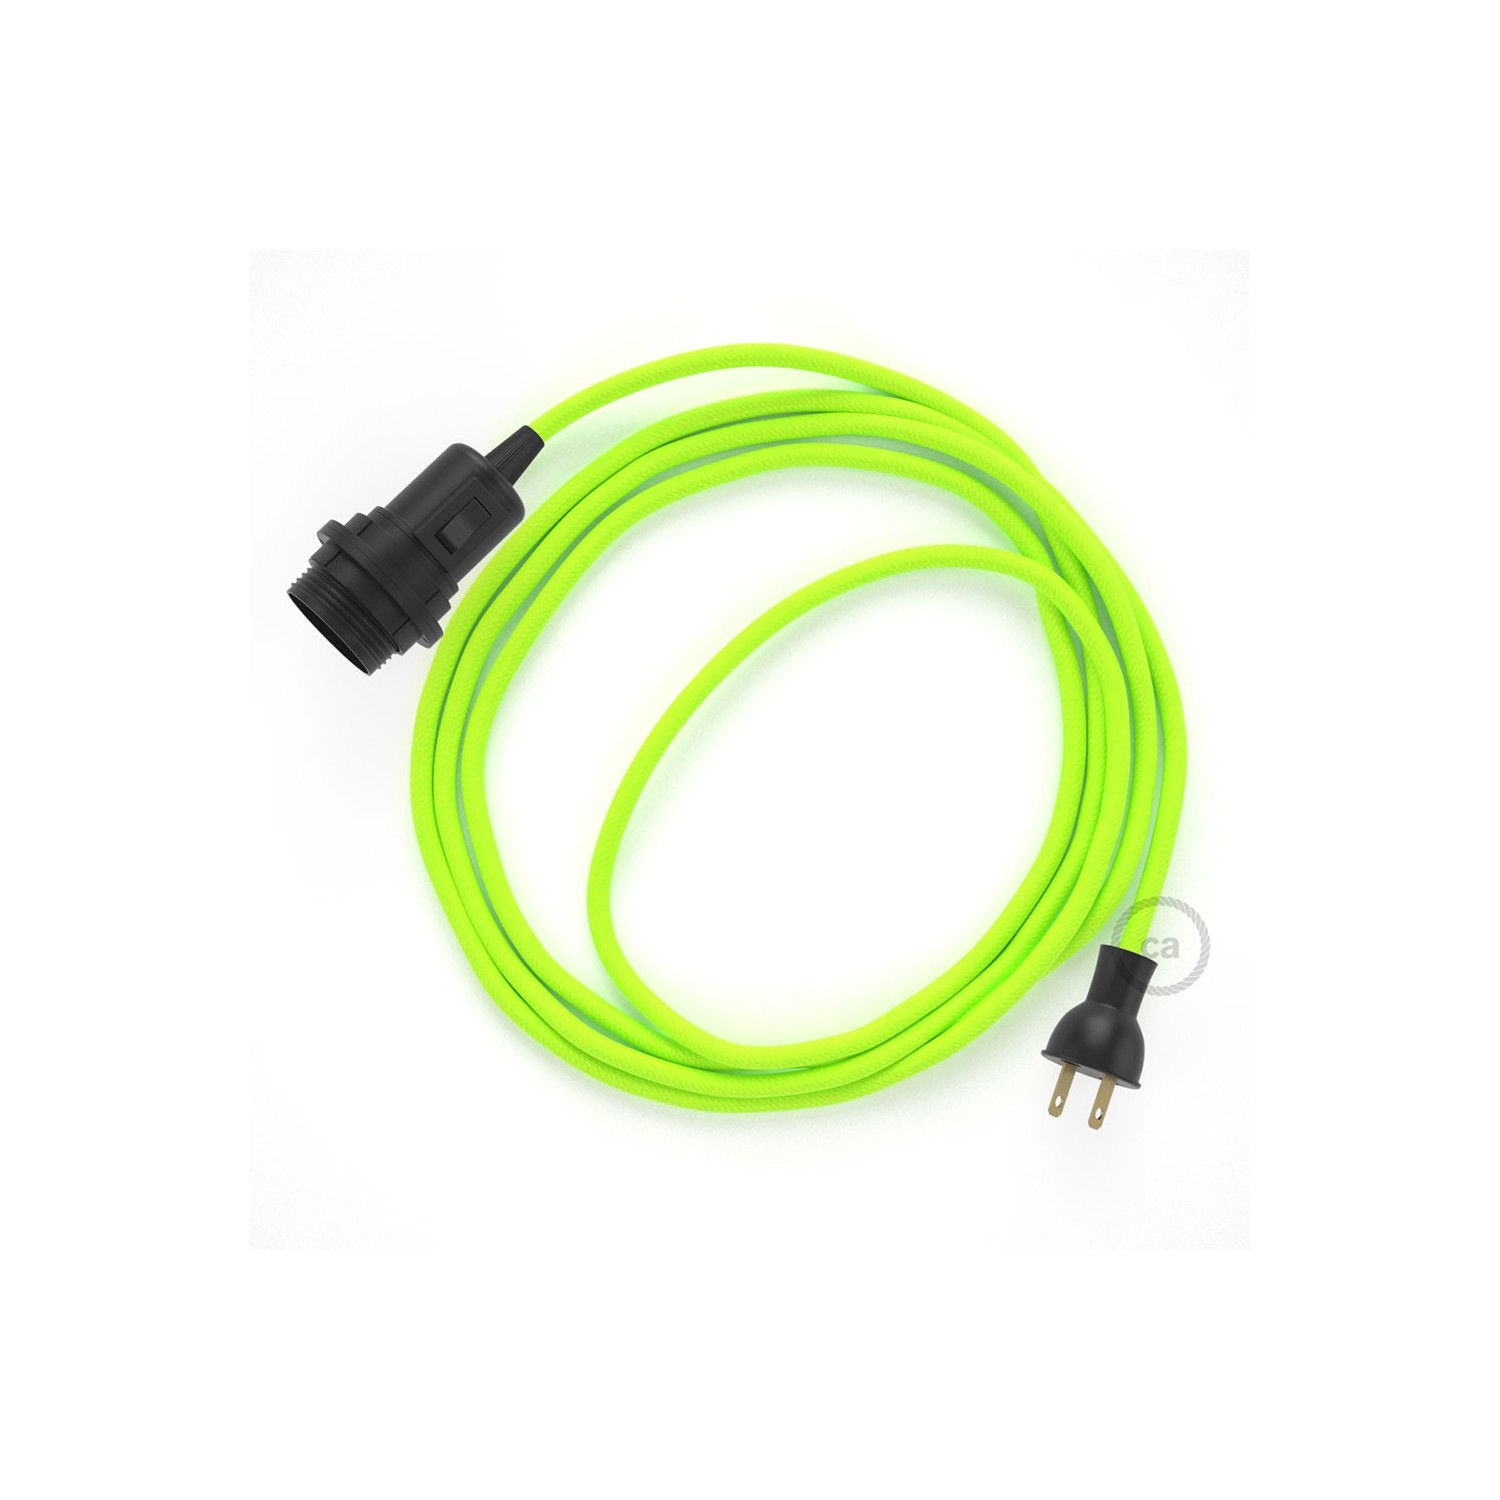 Crea tu Snake para pantalla con cable Fluorescente Amarillo RF10, socket y enchufe, y trae la luz donde tu quieras.